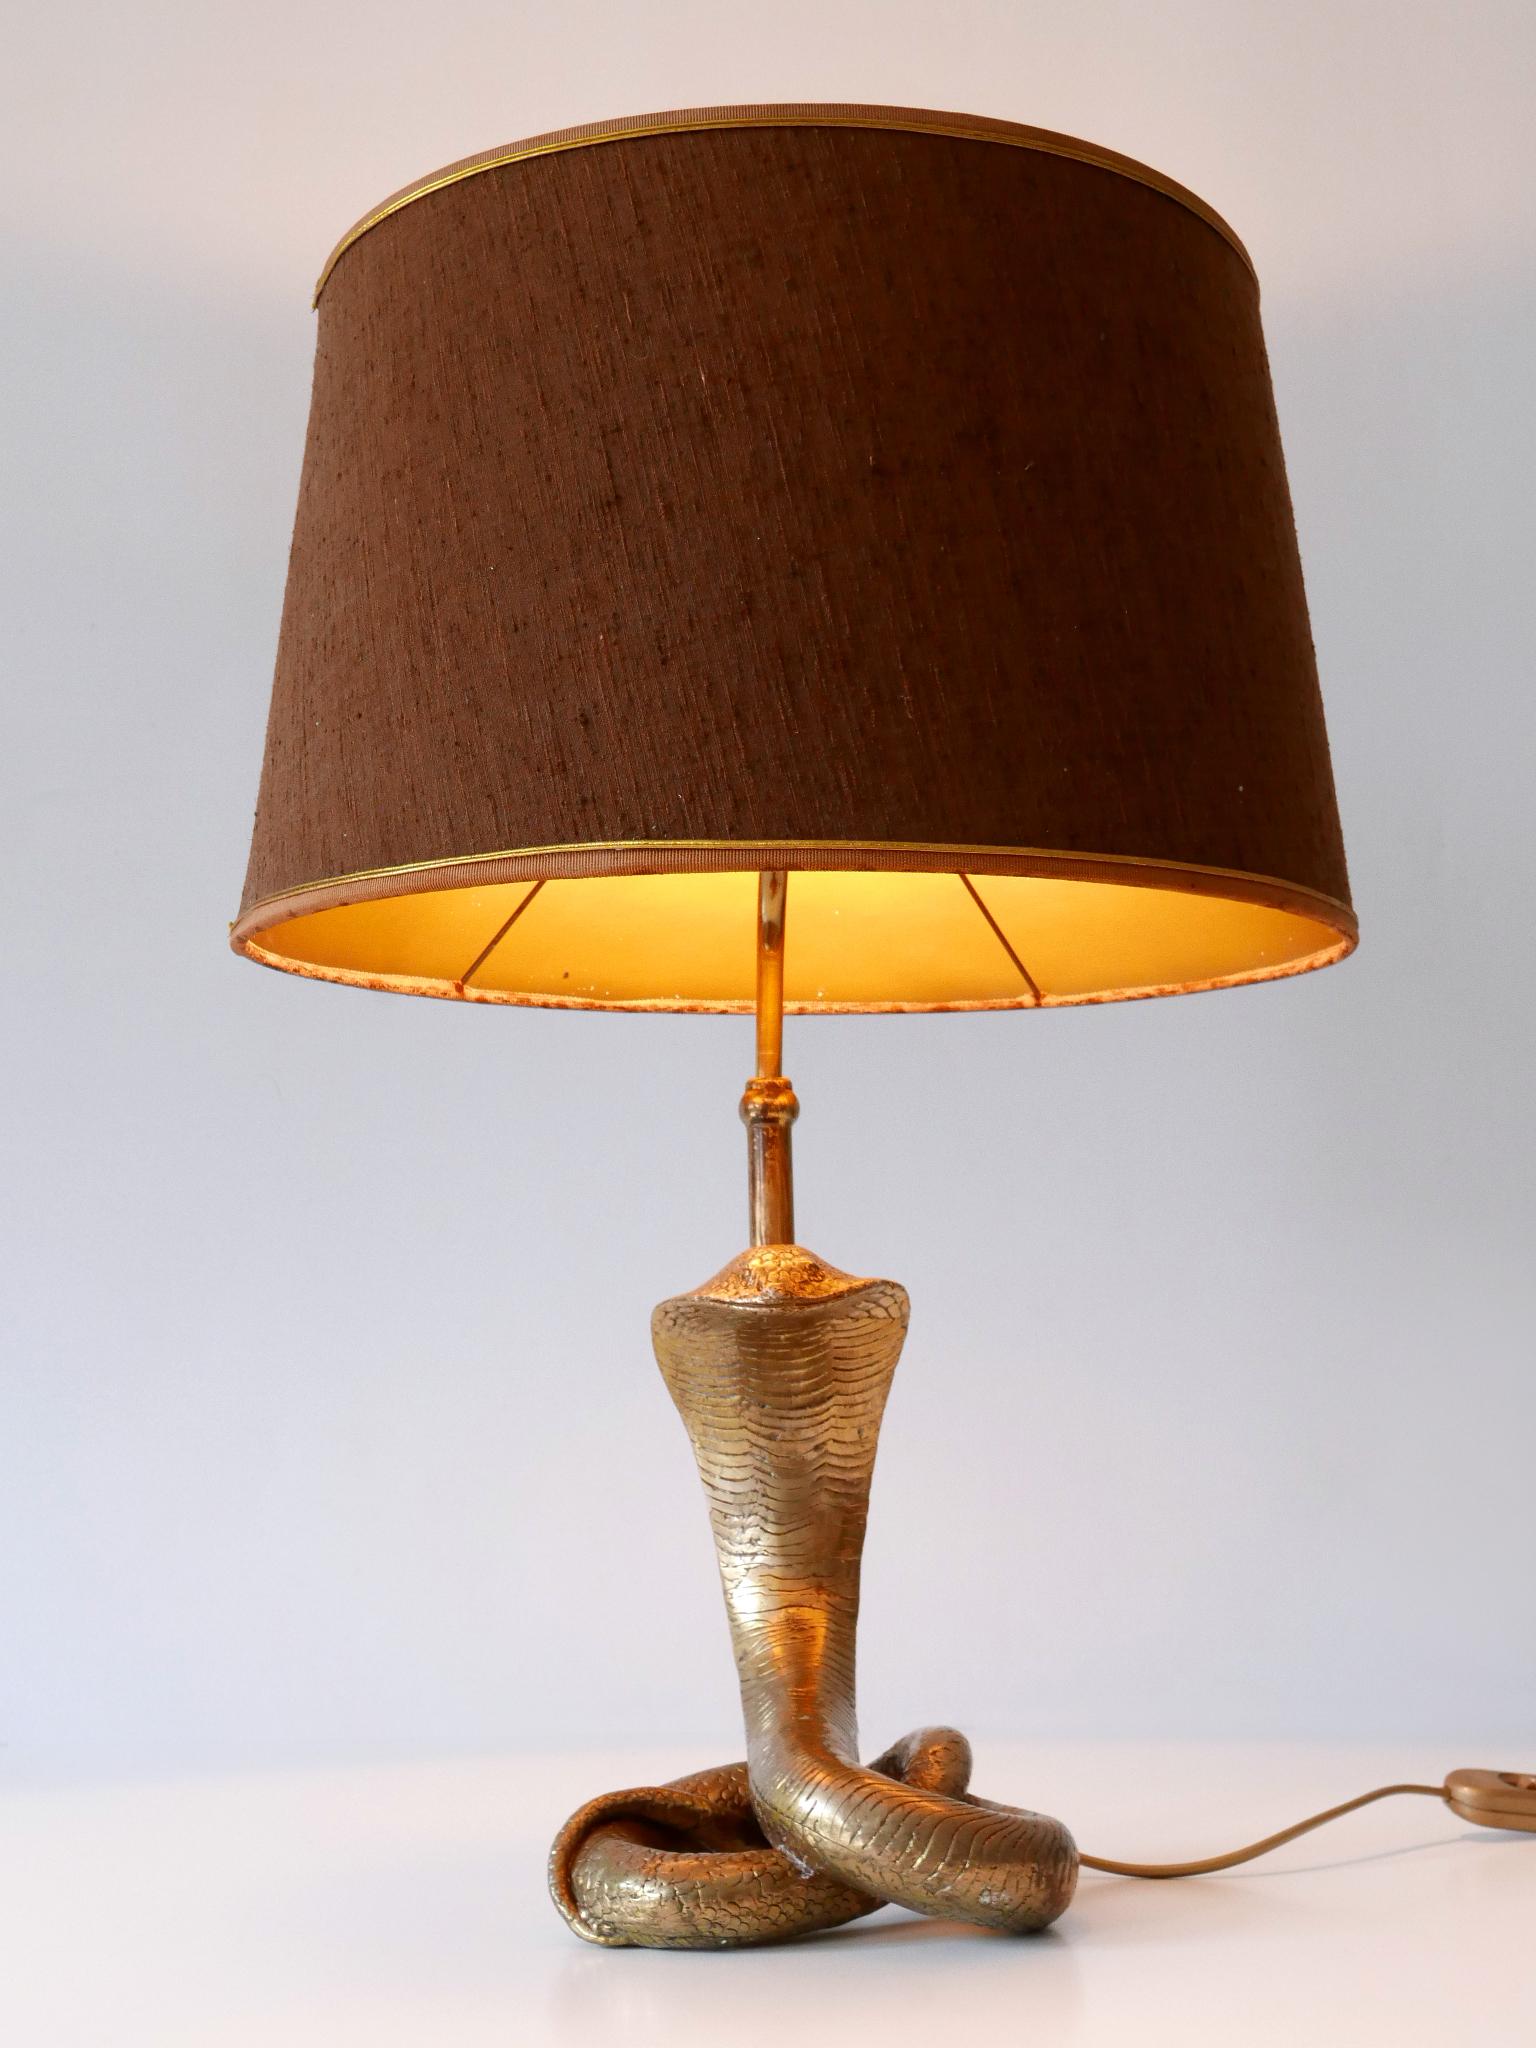 Extraordinaire et étonnante lampe de table 'cobra' en laiton, de style moderne du milieu du siècle. Conçu et fabriqué probablement par Maison Jansen, France, années 1970.

Réalisée en laiton massif, tube et abat-jour en soie/tissu, la lampe est